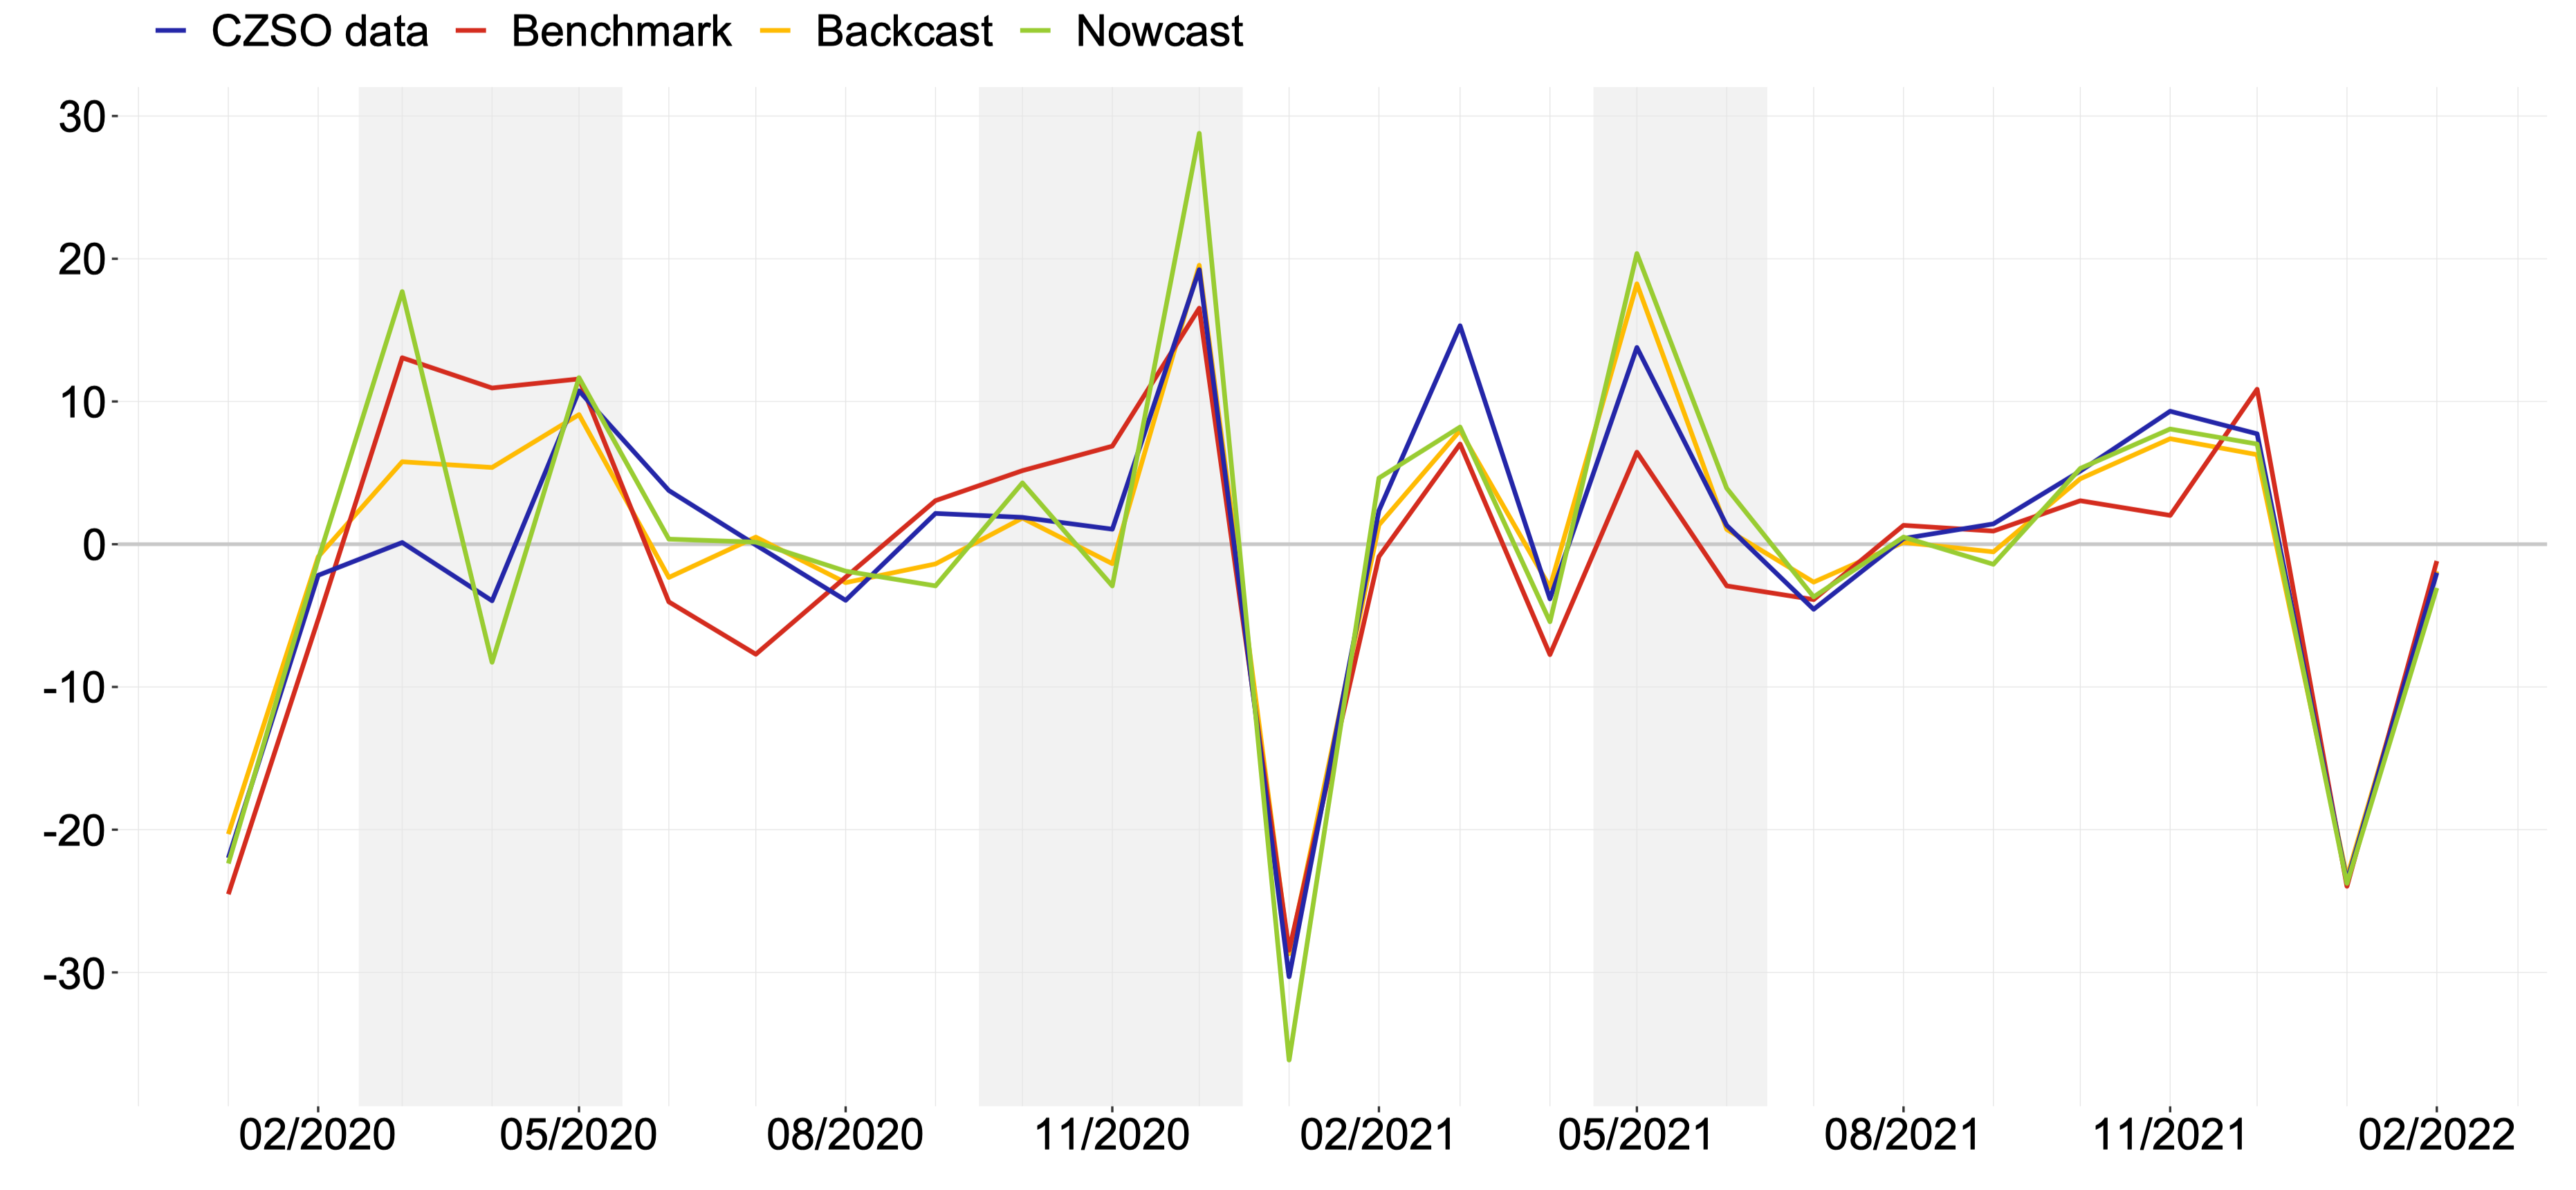 Graf 1 – Vývoj meziměsíčních změn maloobchodních tržeb (CZSO data) v %, jejich odhady na základě ekonometrického modelu (Benchmark) a karetních transakcí (Backcast, Nowcast)